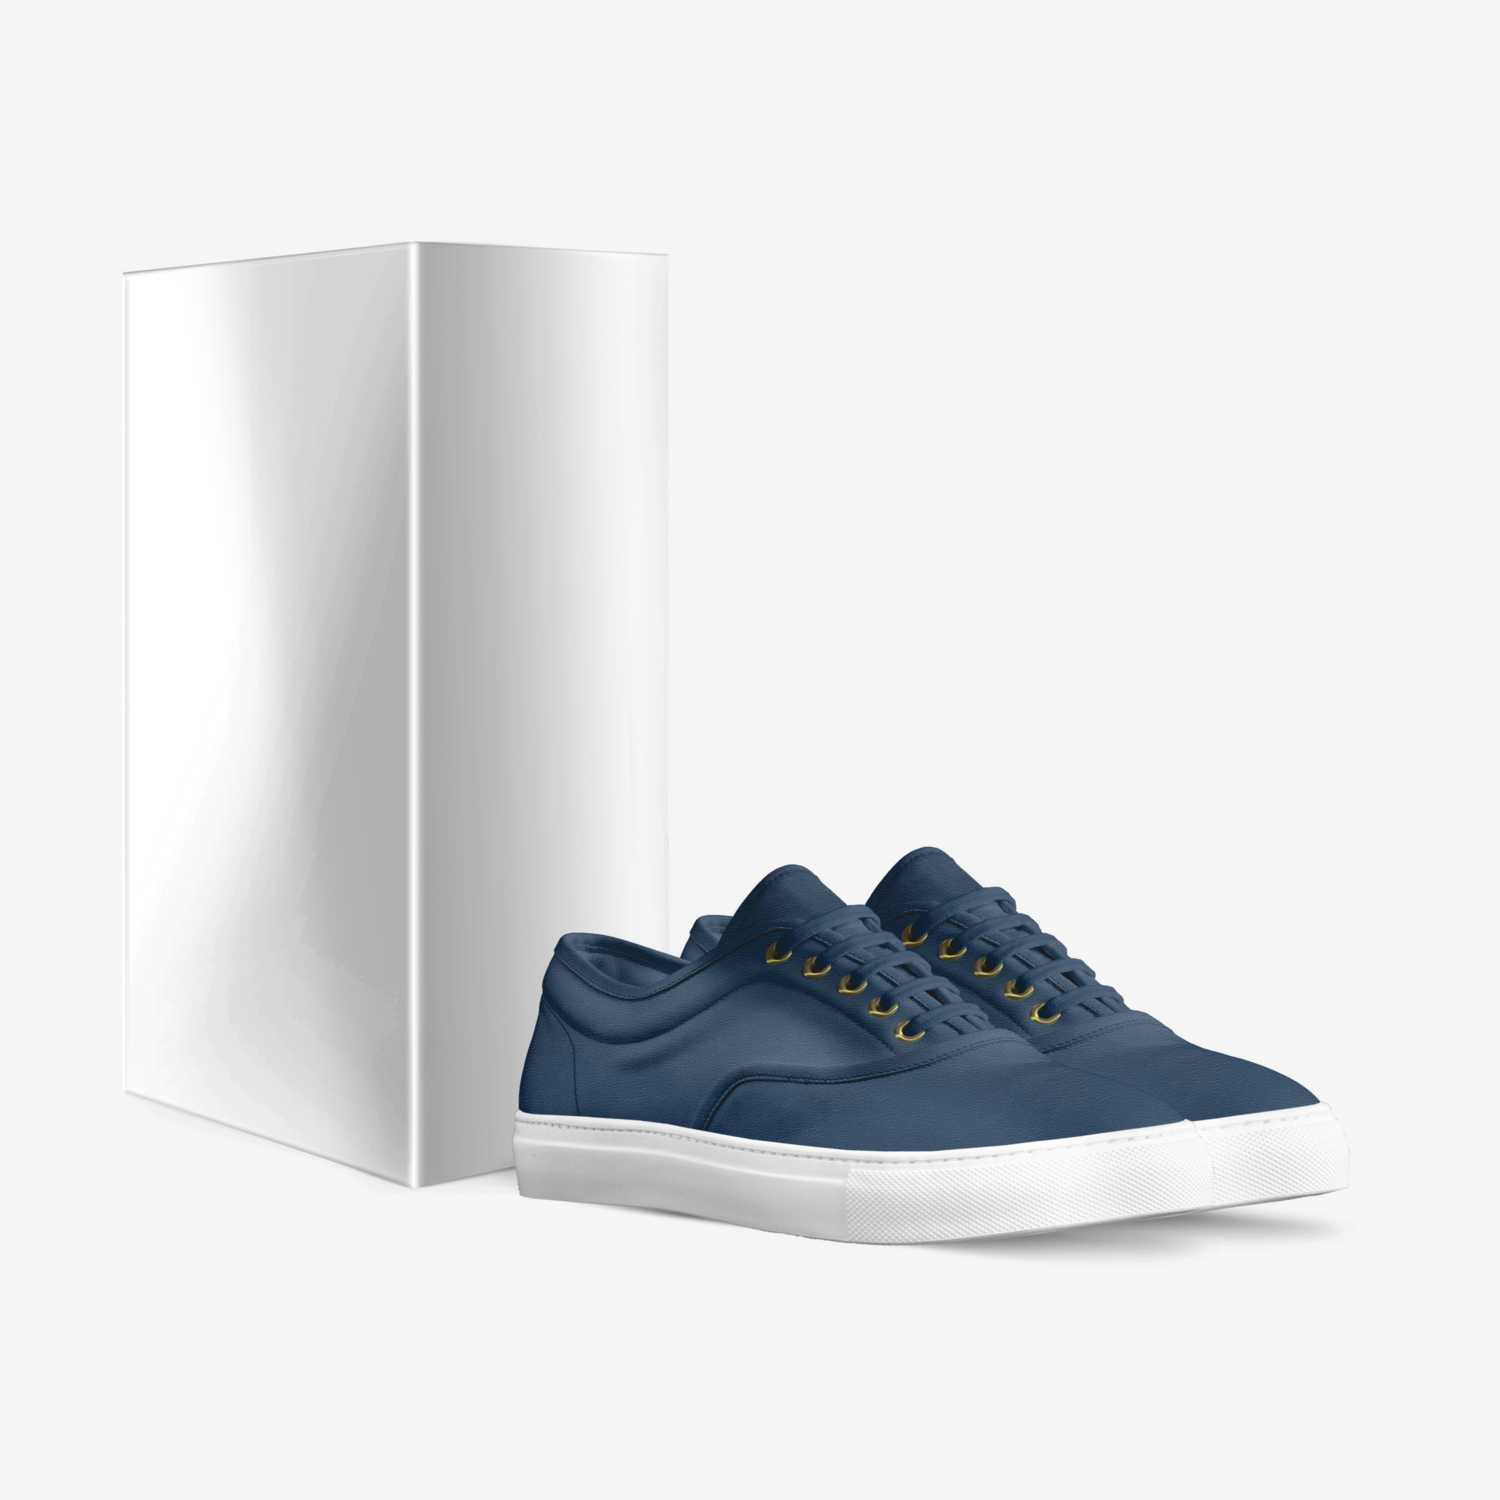 RUDI YERO custom made in Italy shoes by Rudy Villanueva | Box view